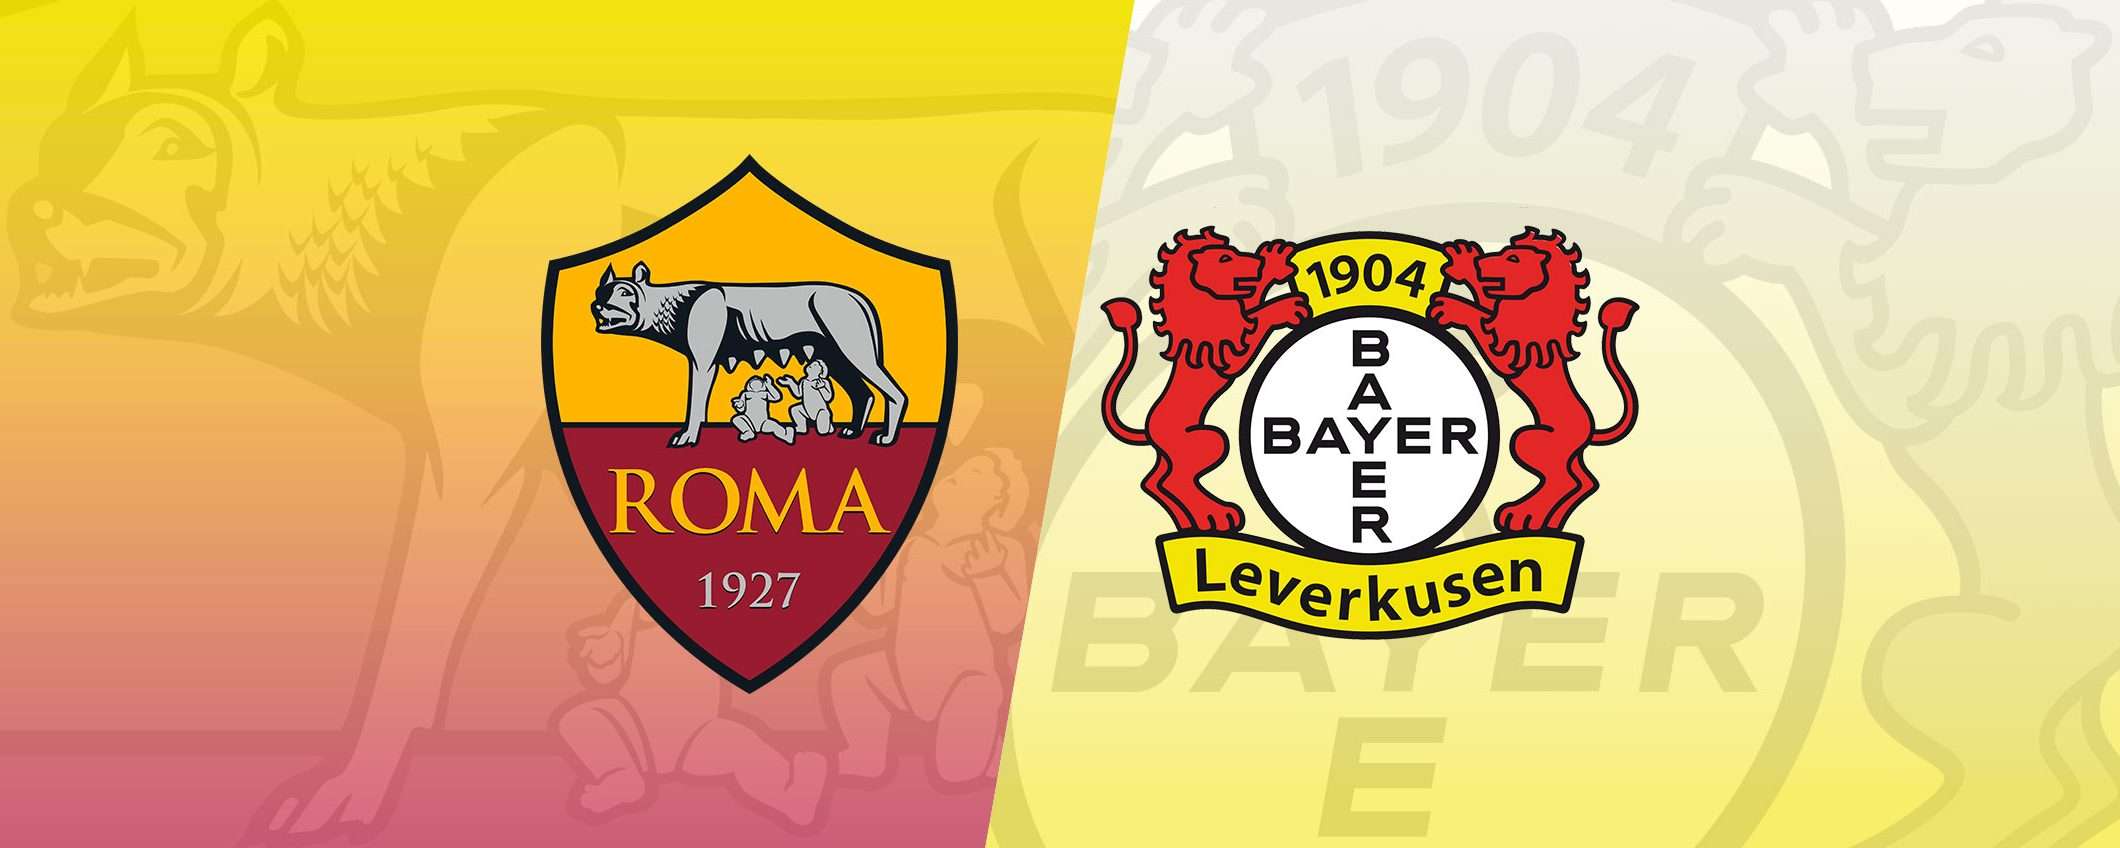 Roma-Bayern Leverkusen: come vederla in streaming dall'estero